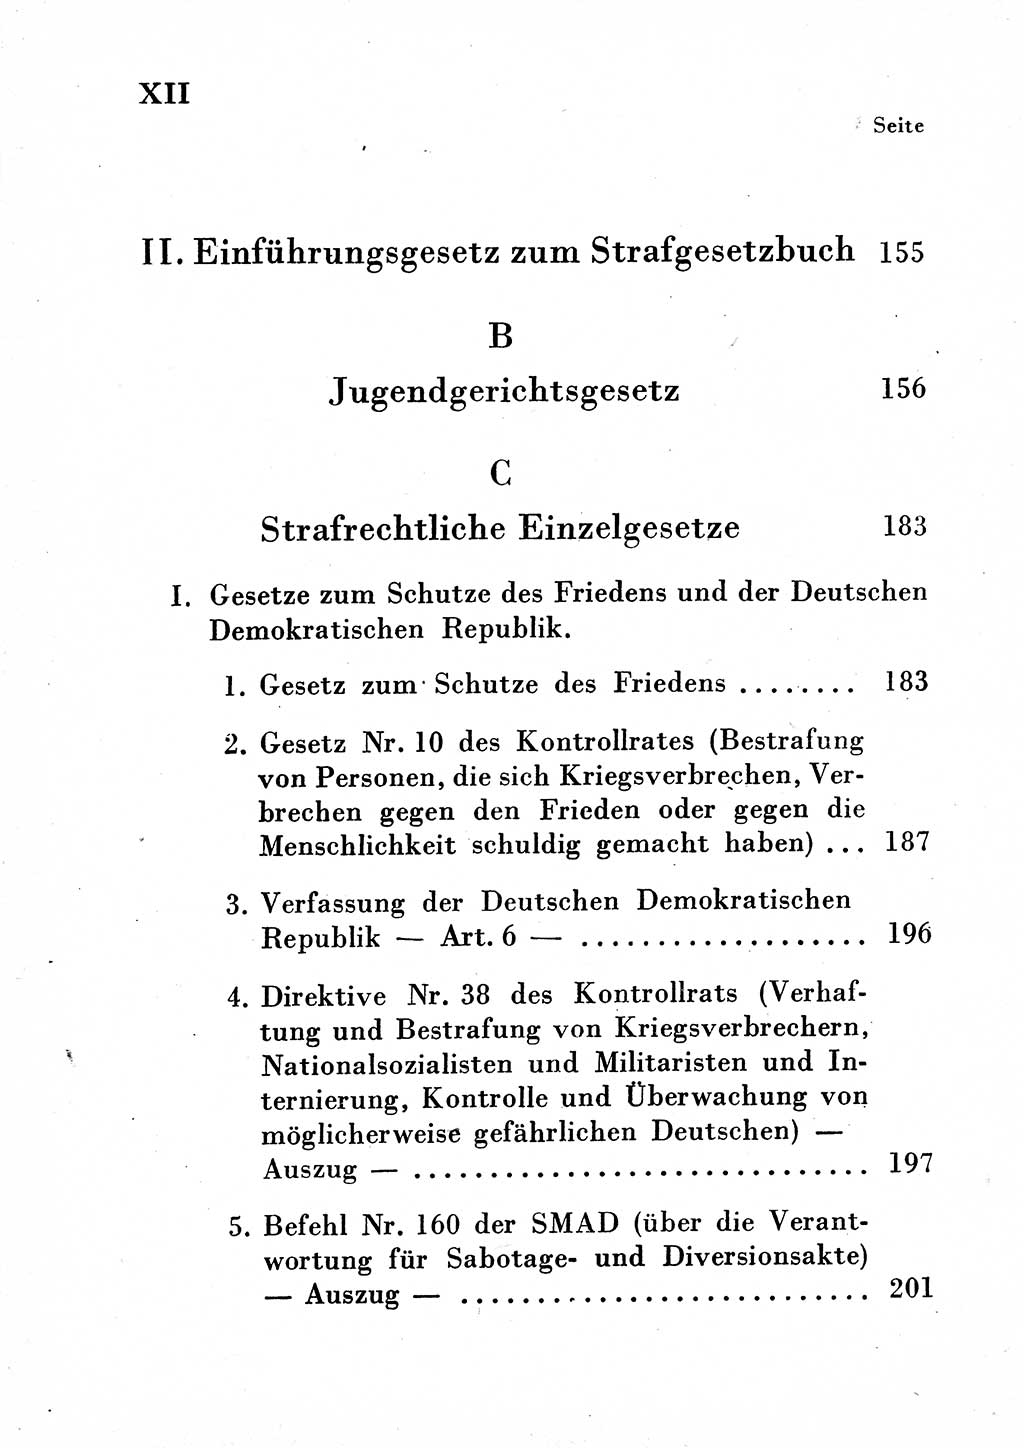 Einleitung Strafgesetzbuch (StGB) und andere Strafgesetze [Deutsche Demokratische Republik (DDR)] 1954, Seite 12 (Einl. StGB Strafges. DDR 1954, S. 12)